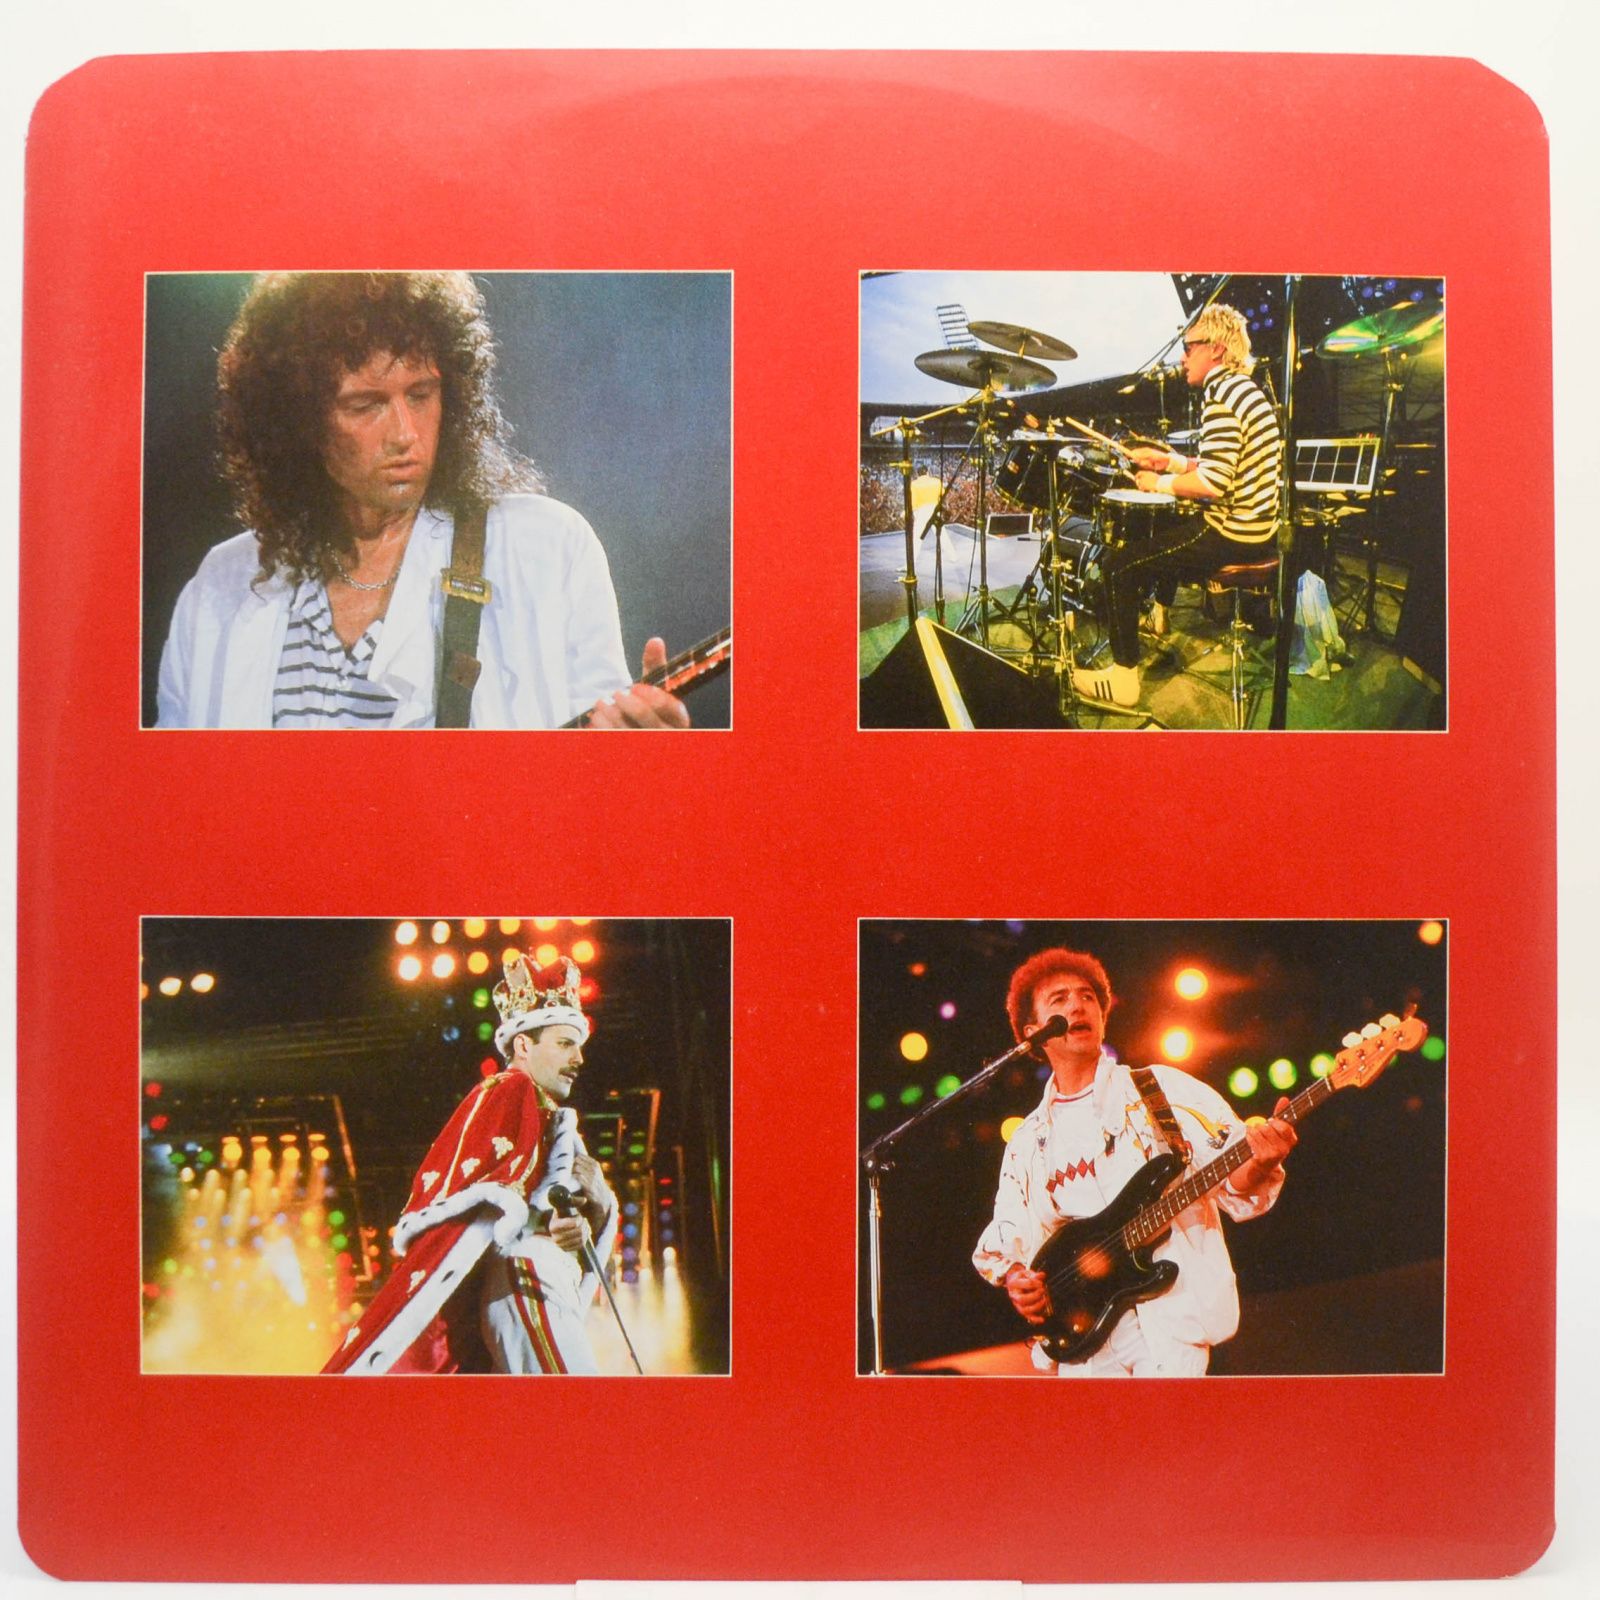 Queen — Live Magic (UK, Misprint), 1986